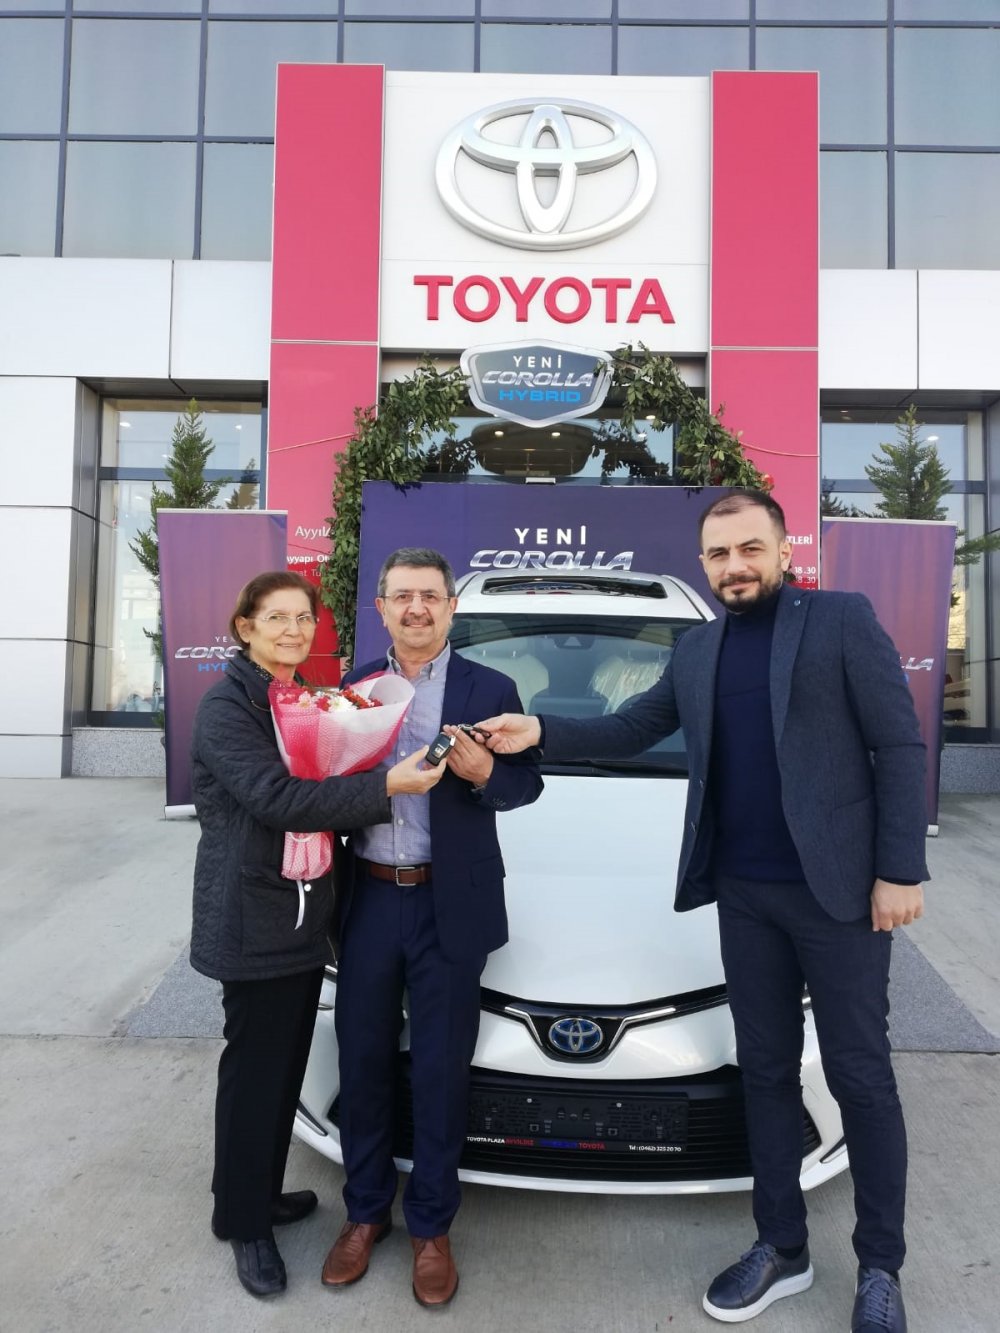 Yeni Corolla Trabzon'da ilk sahibini buldu